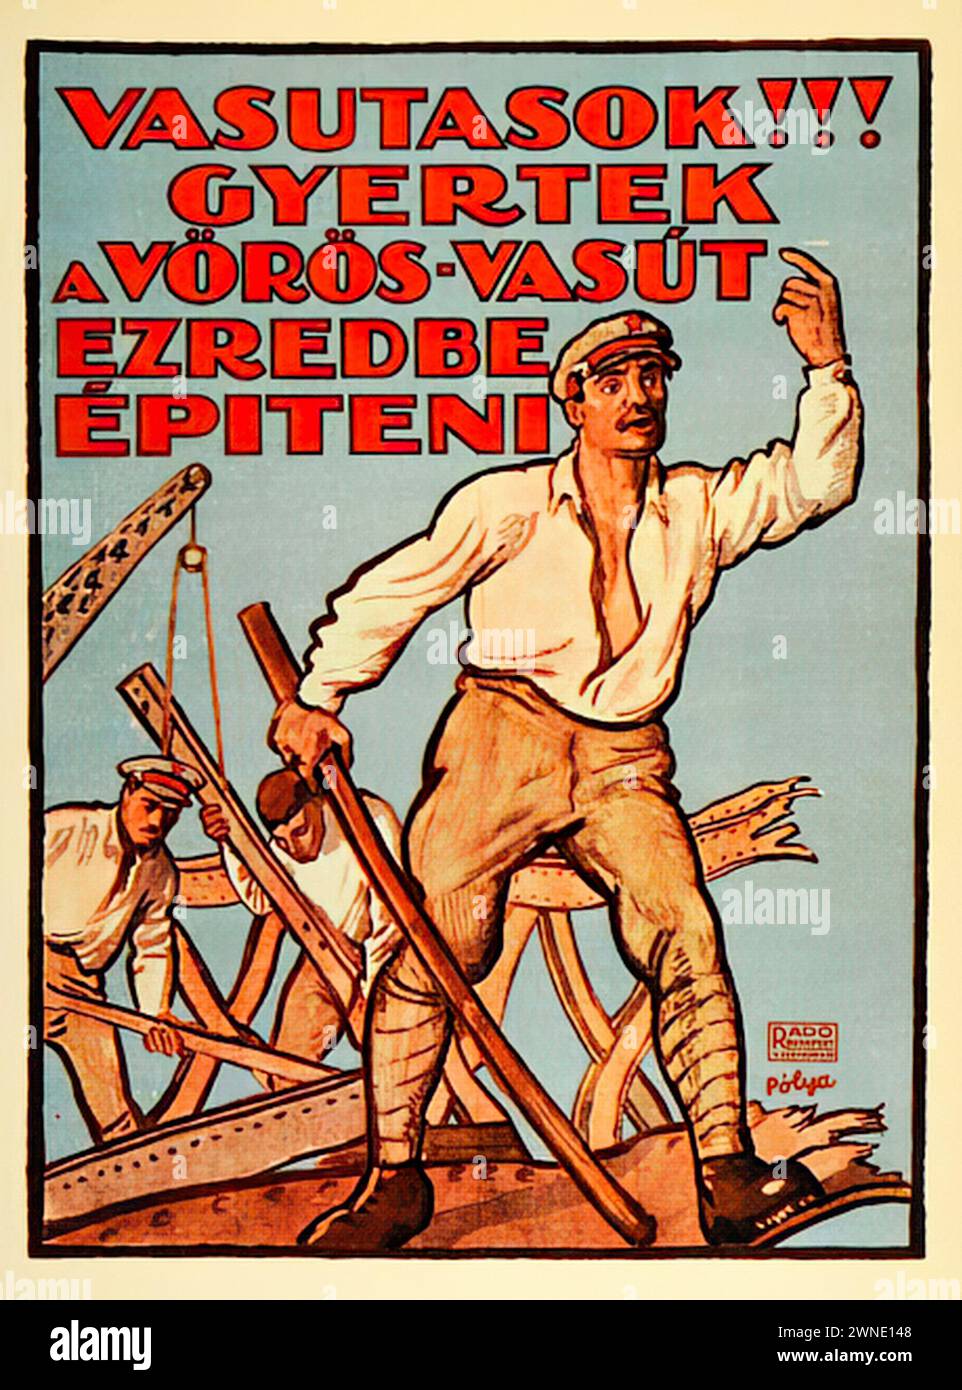 Sowjetisches Ungarn Poster von Tibor Pólya.jpg | 'VASUTASOK!!! GYERTETEK AVÖRÖS-VASÚT EZREDÉBE ÉPÍTENI' ['EISENBAHNARBEITER!!!! COME BUILD THE REGIMENT OF THE RED RAILWAY'] Vintage-Werbung, die Arbeiter beim Bau von Eisenbahnstrecken zeigt, mit einem realistischen Stil, der die Kraft und Dynamik der Arbeit einfängt. | Stockfoto